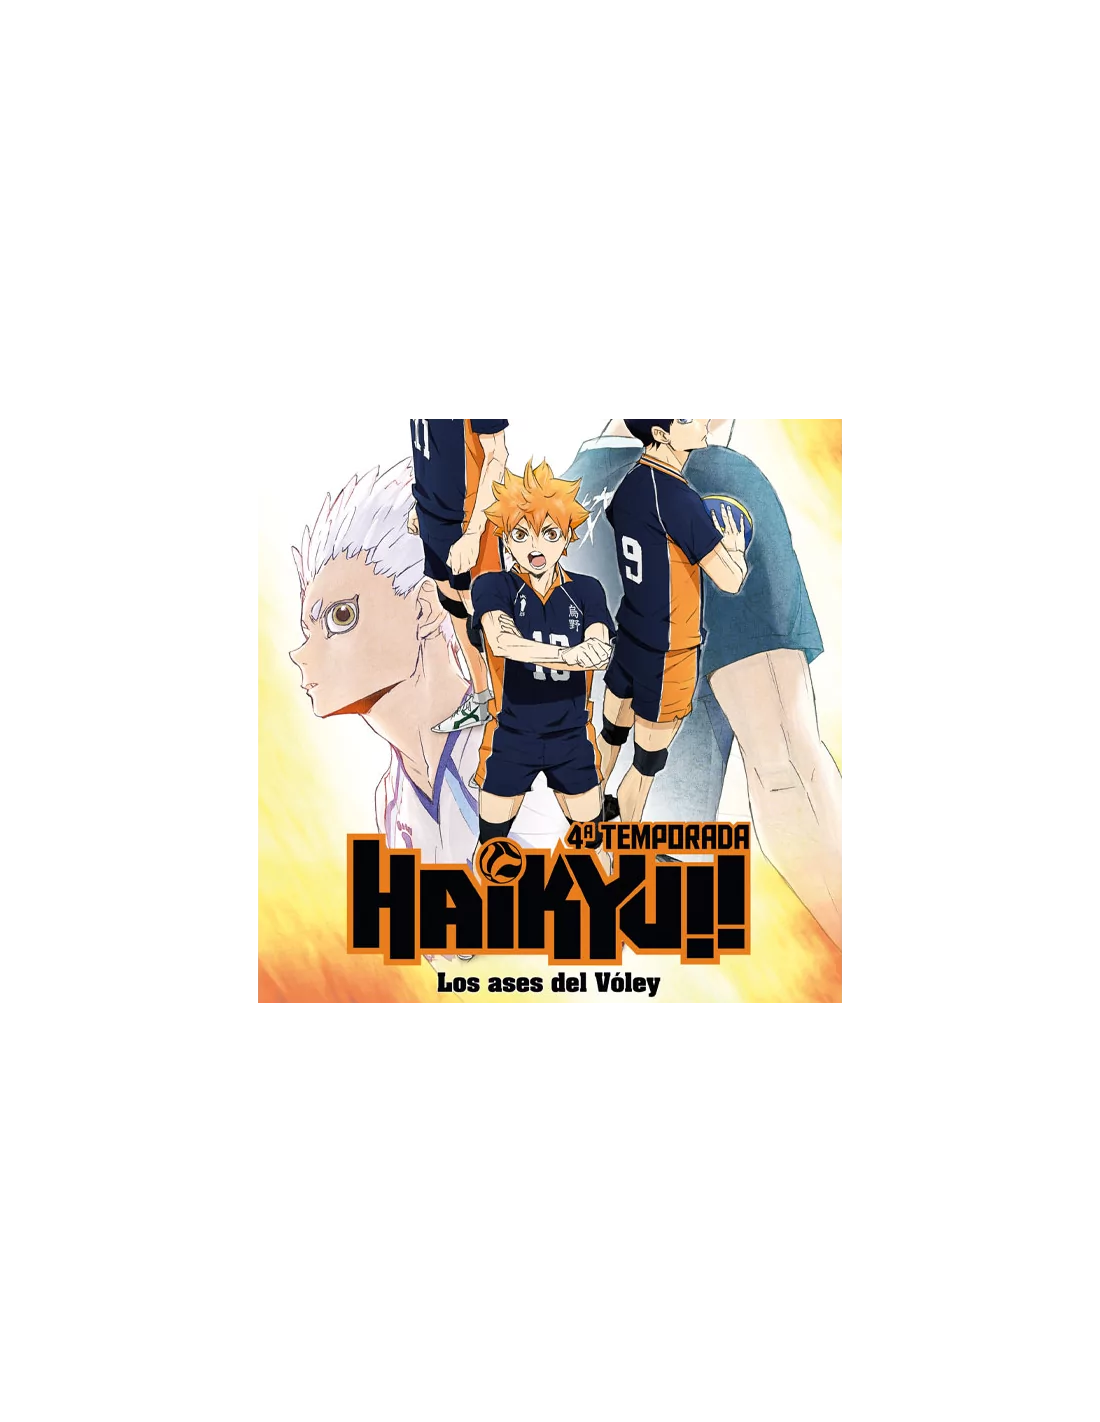 HAIKYU TEMPORADA 4 Blu-ray (episoidos 1 a 25 + 5 ova)